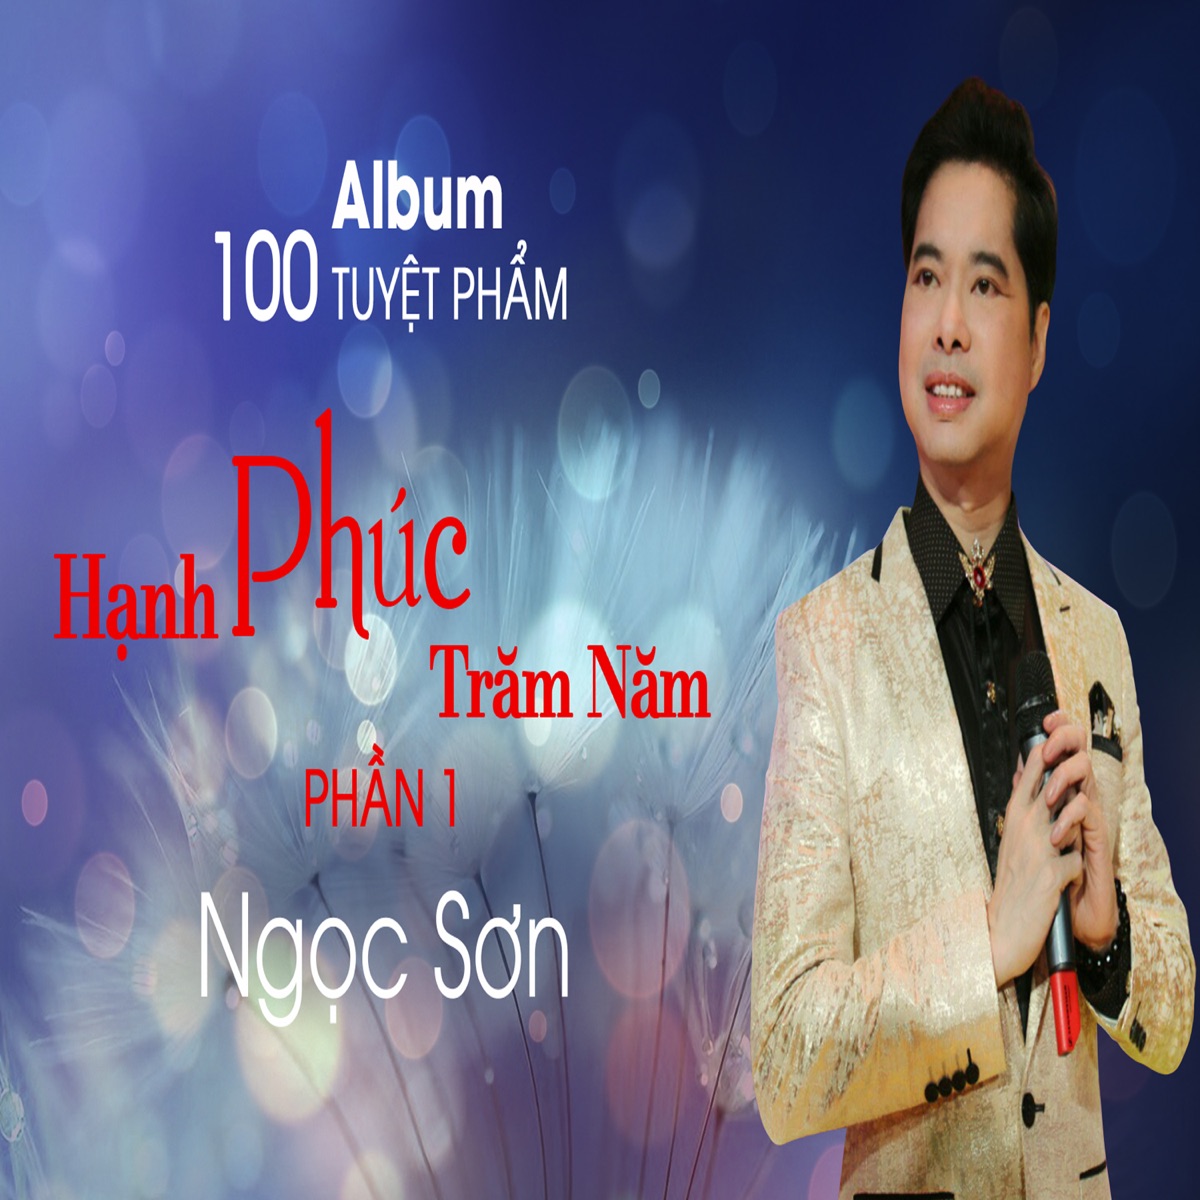 Ngọc Sơn 100 Tuyệt Phẩm Hạnh Phúc Trăm Năm - Phần 1 by Ngọc Sơn on Apple  Music